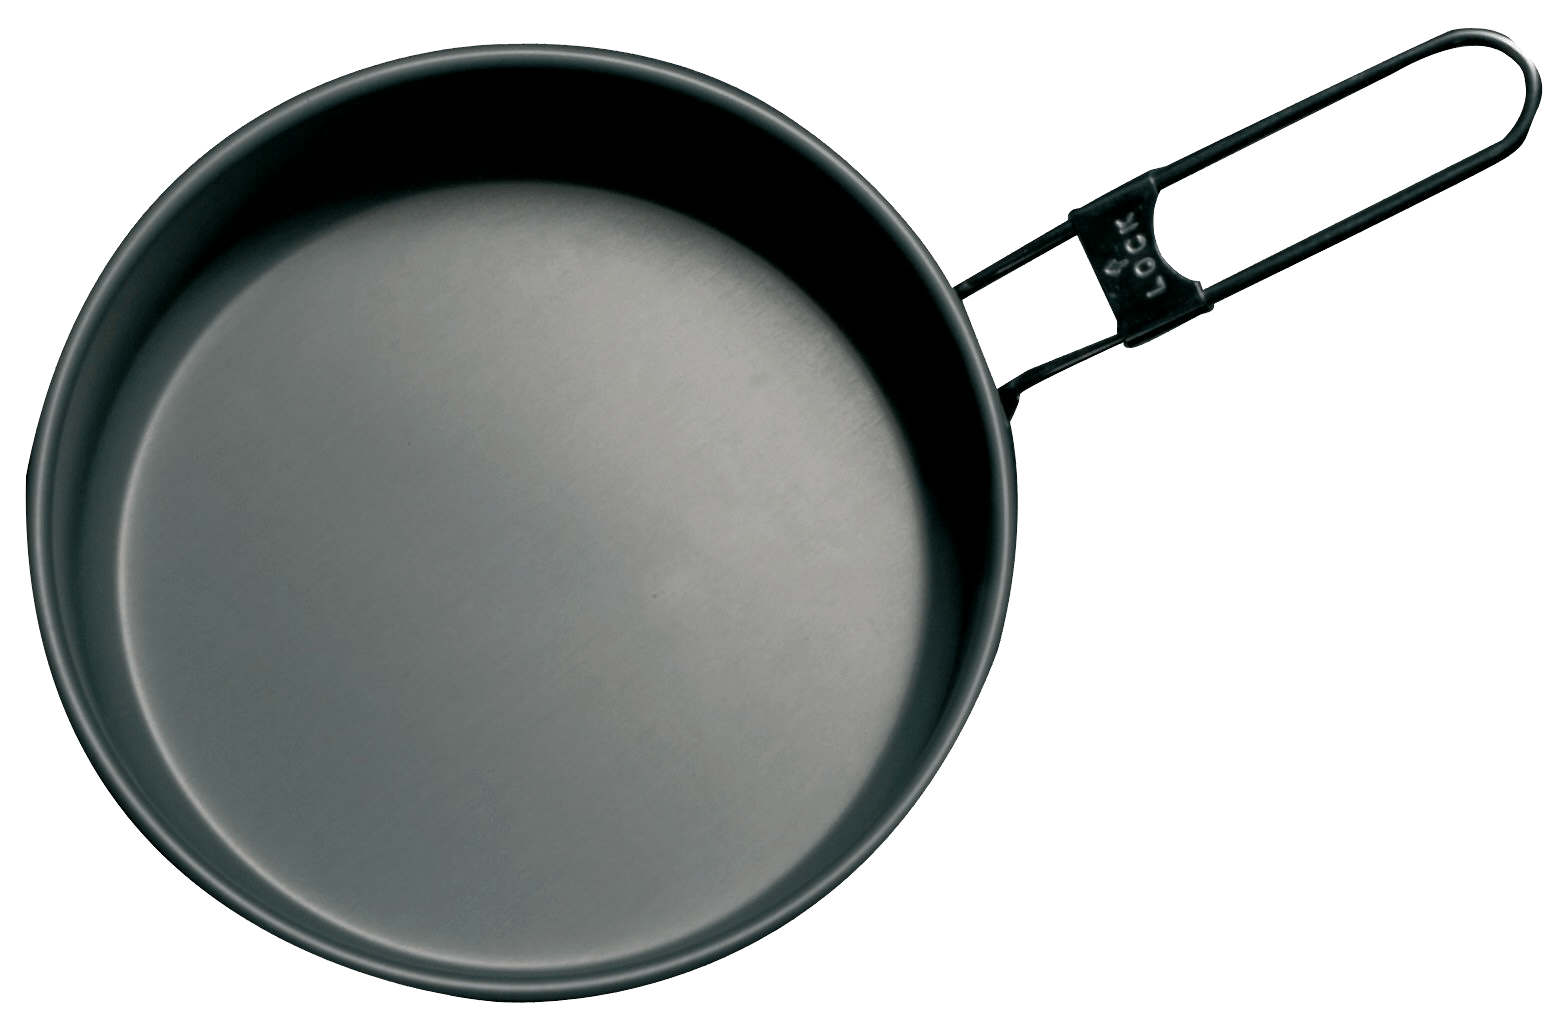 pan clipart fry pan